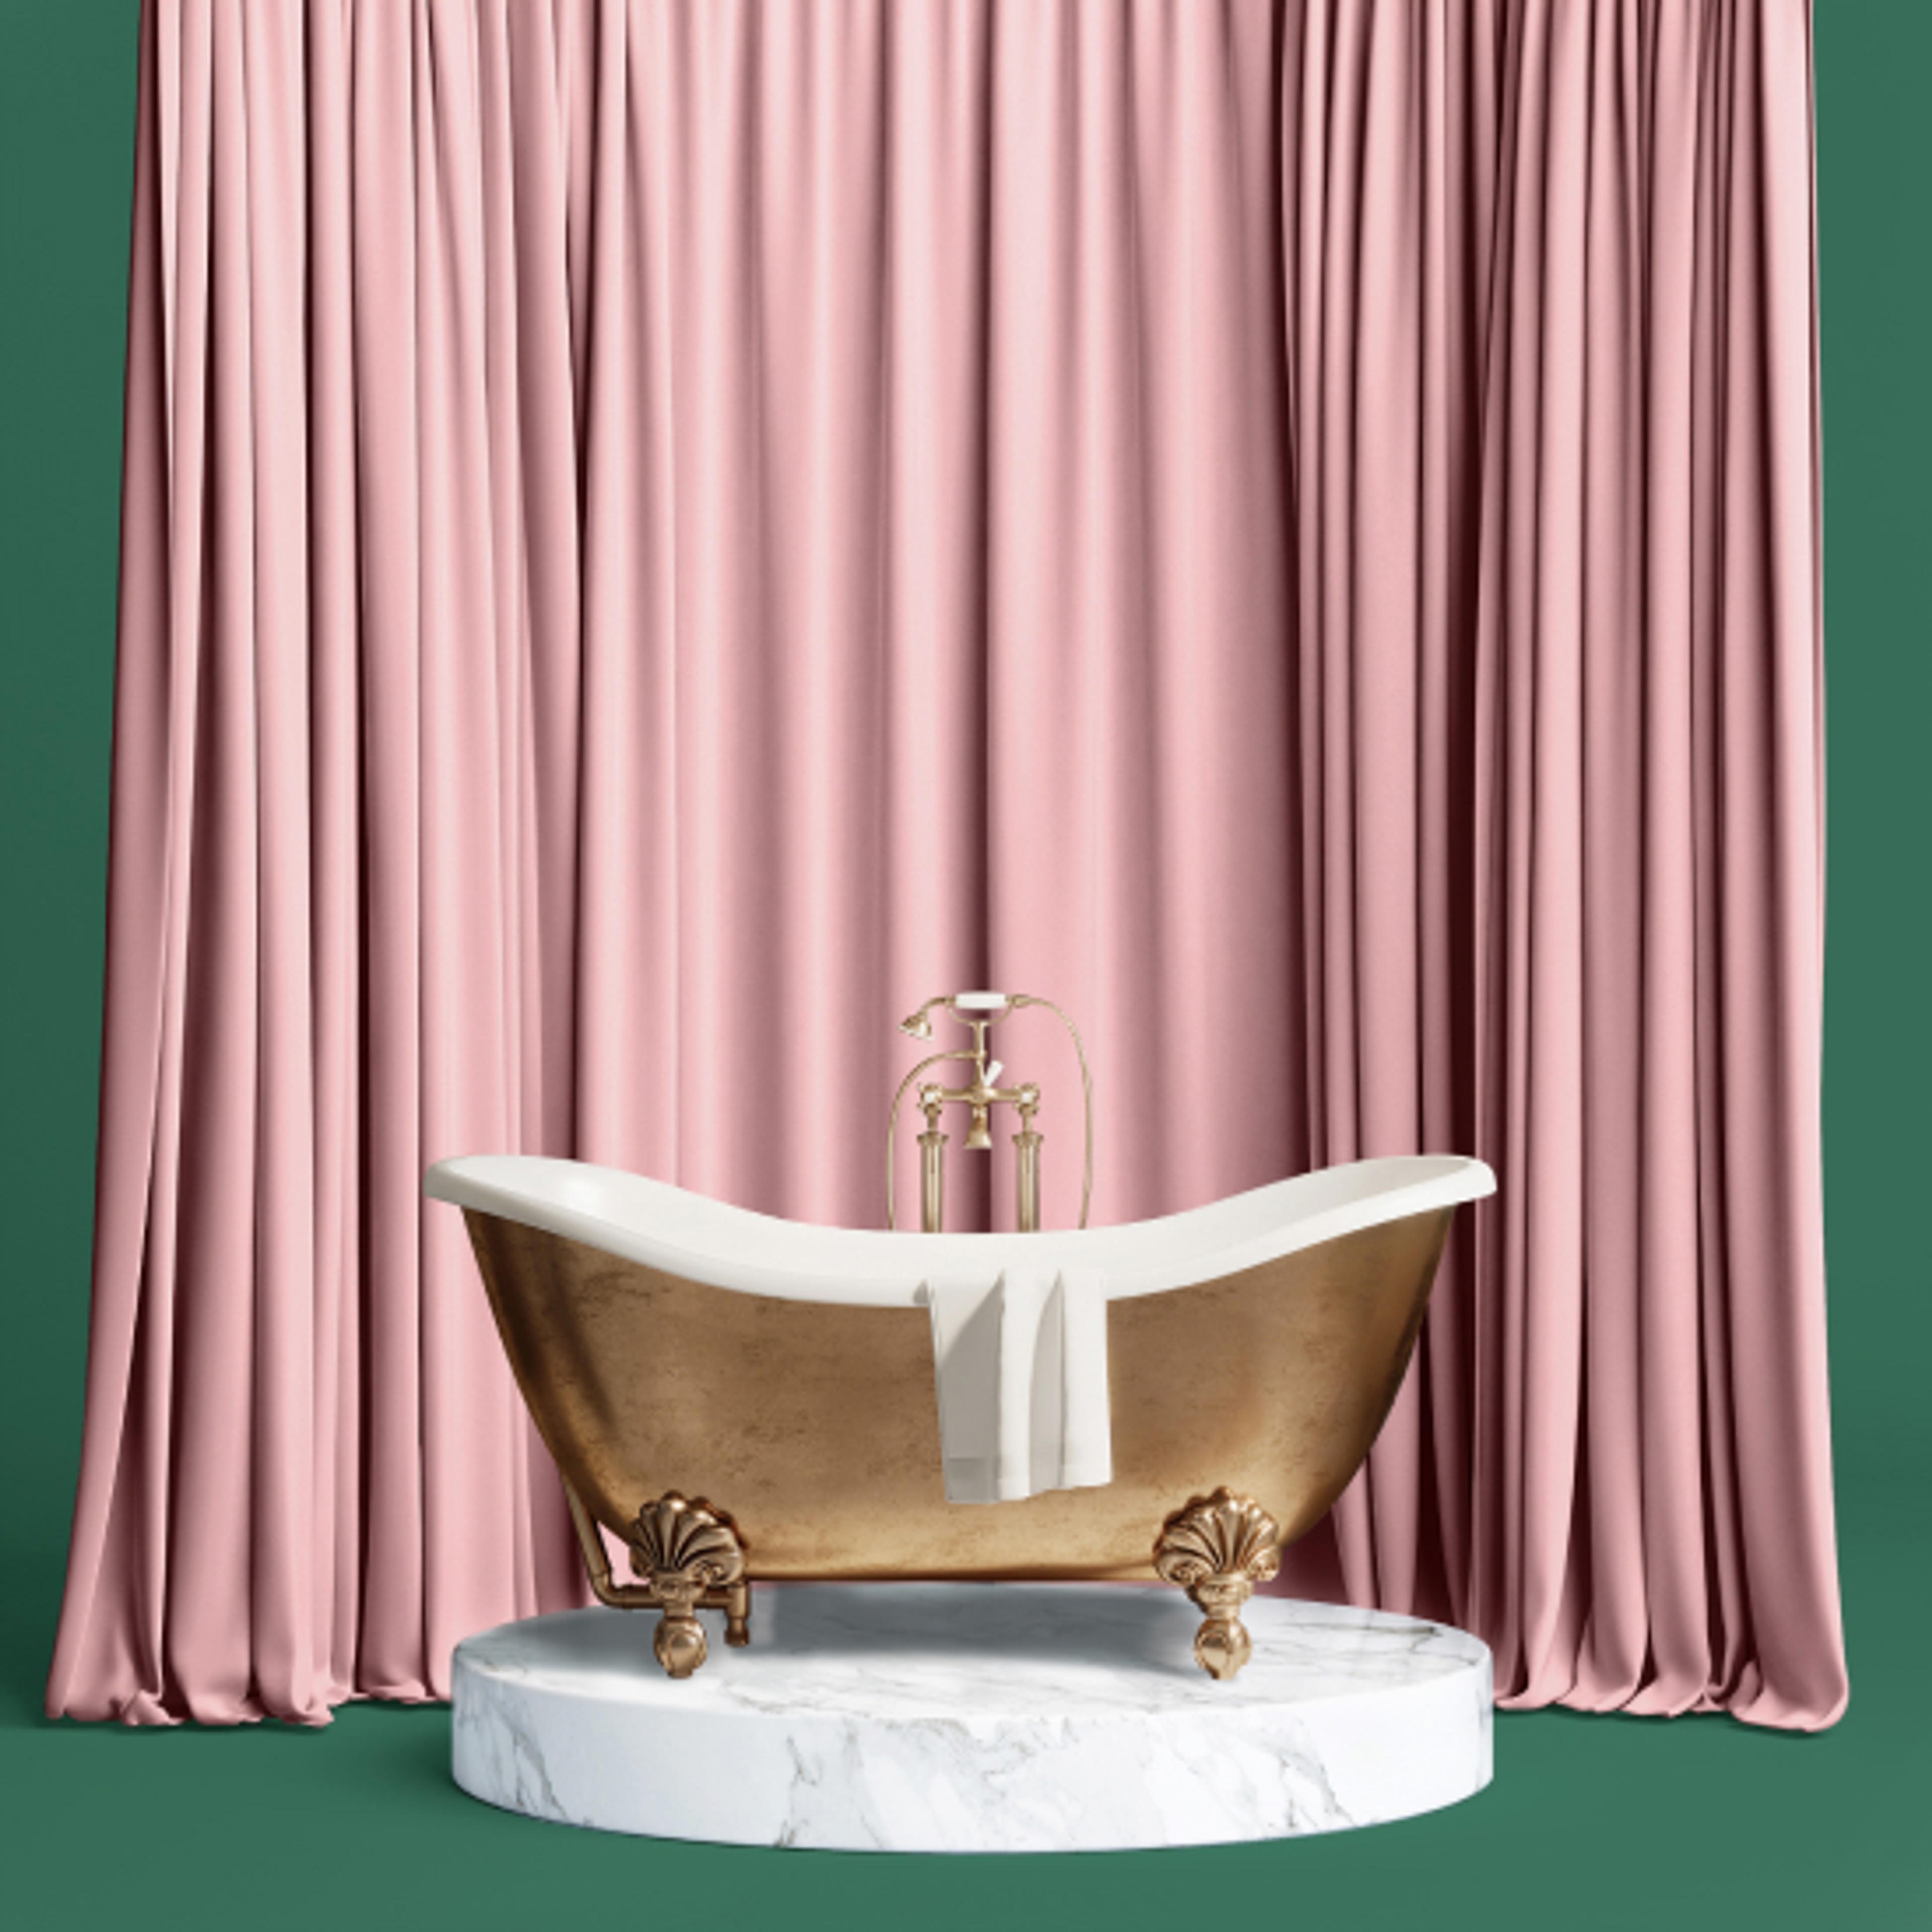 Gammelt badekarv av gull, på et marmor podium med lange tunge gardiner i rosa.